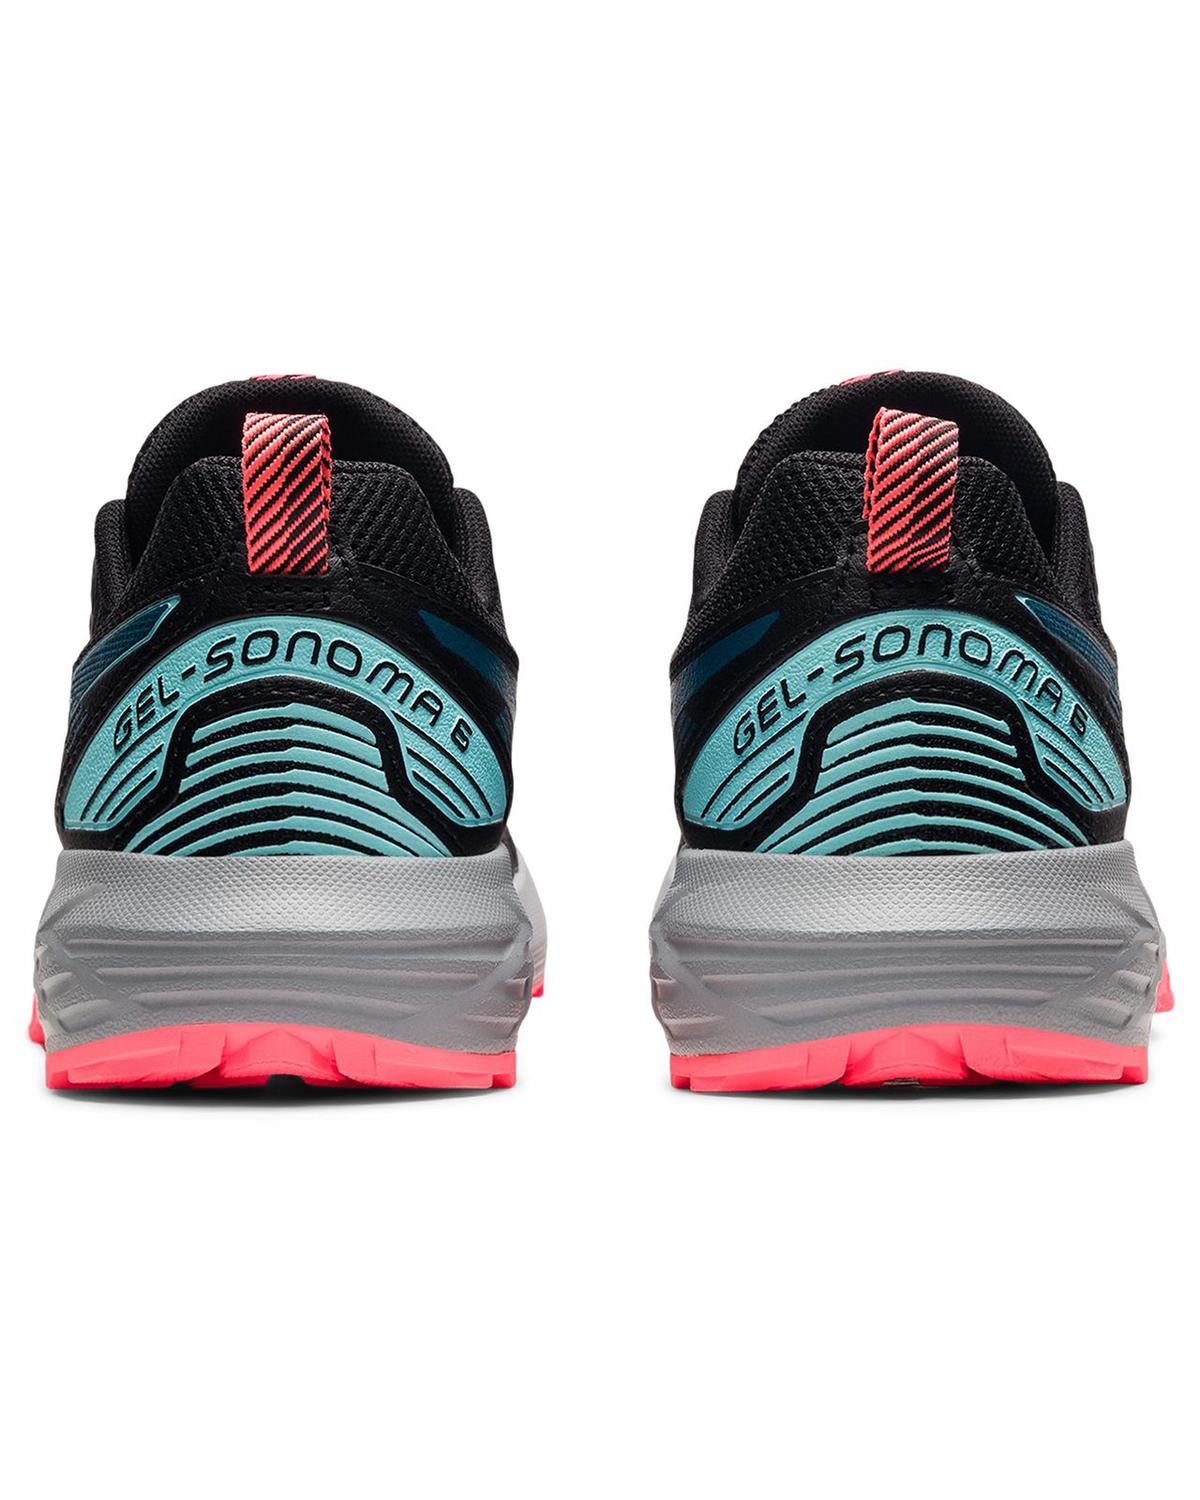 ASICS Women's GEL-SONOMA 6 Trail Running Shoes -  Black